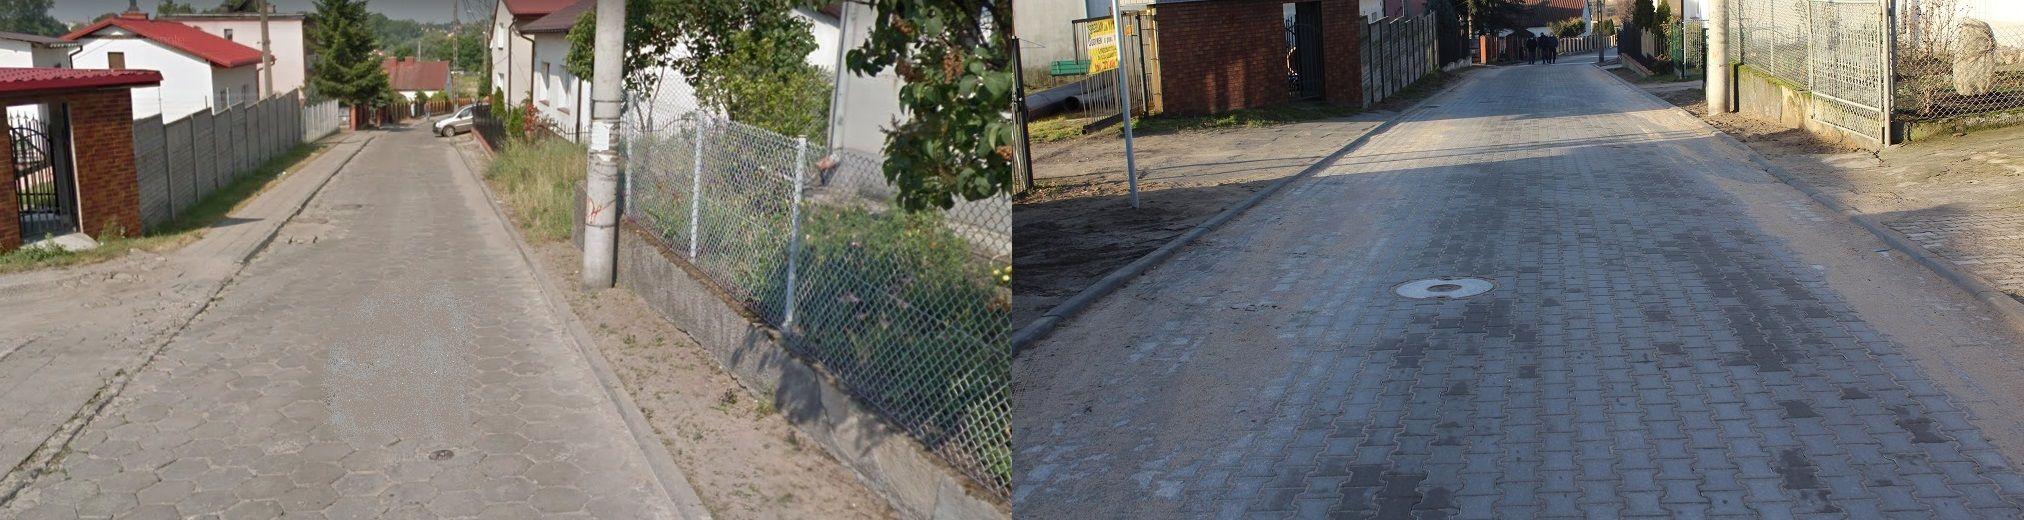 Ulica Górna stan przed i po remoncie - kliknięcie powiększy obrazek